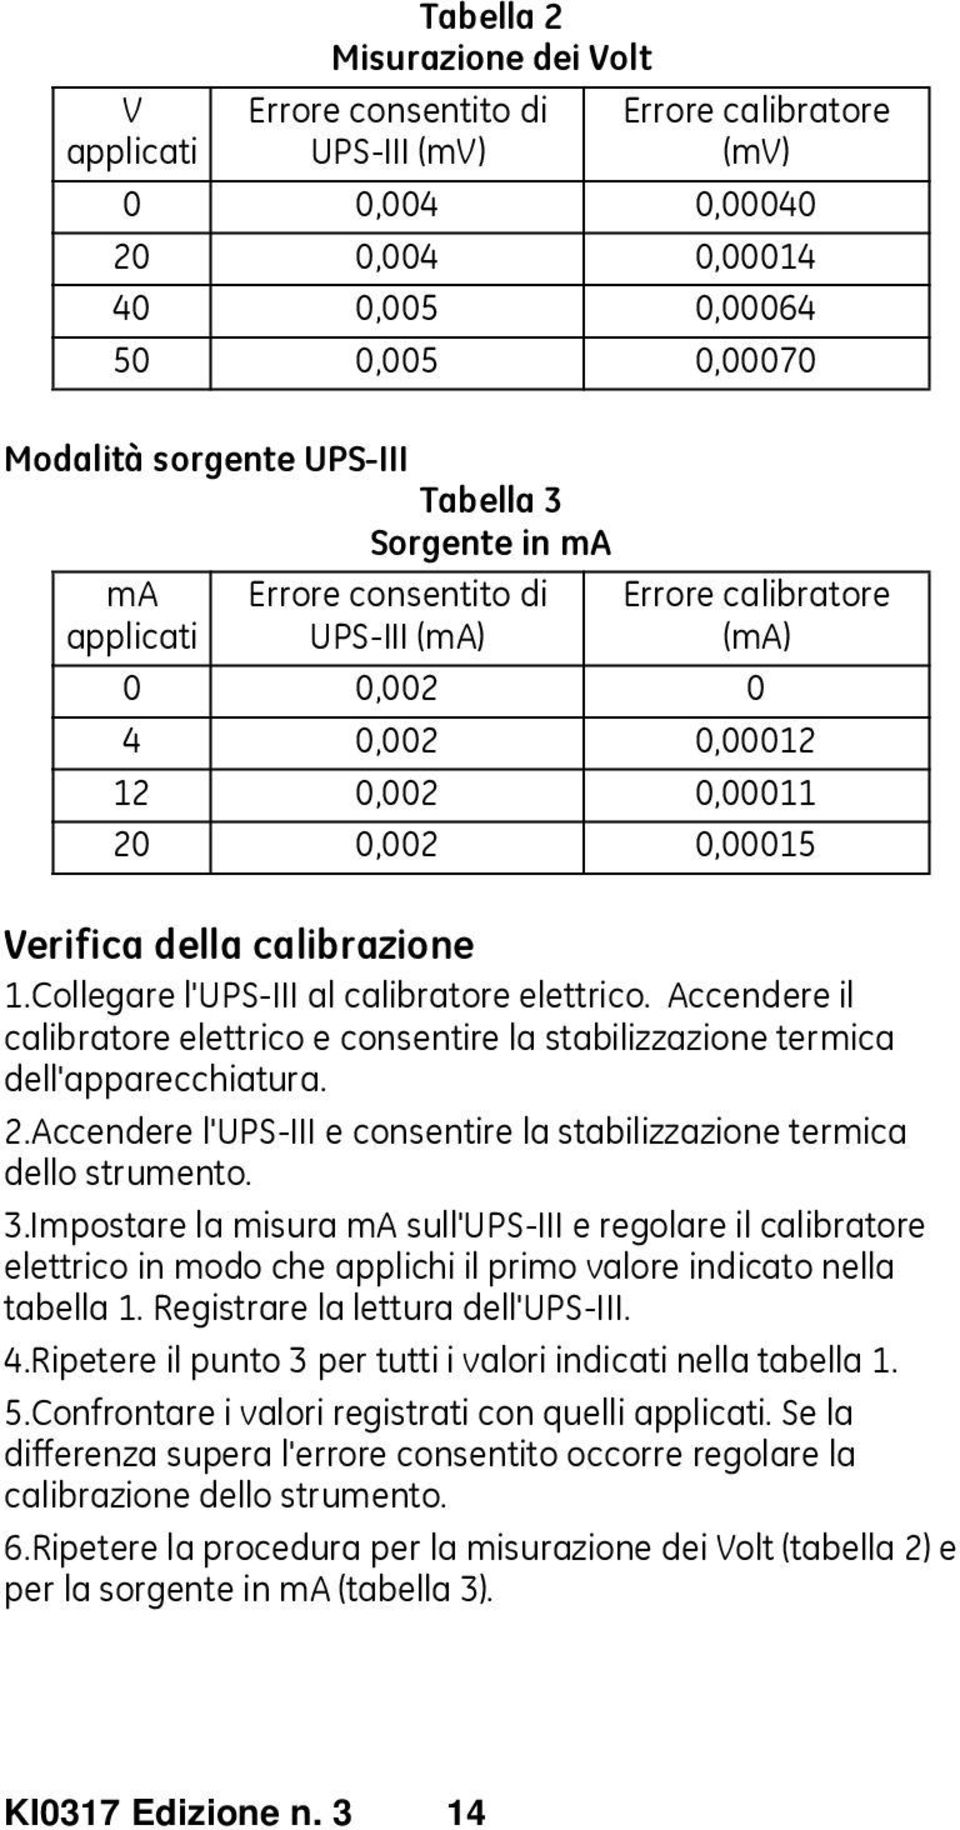 Collegare l'ups-iii al calibratore elettrico. Accendere il calibratore elettrico e consentire la stabilizzazione termica dell'apparecchiatura. 2.